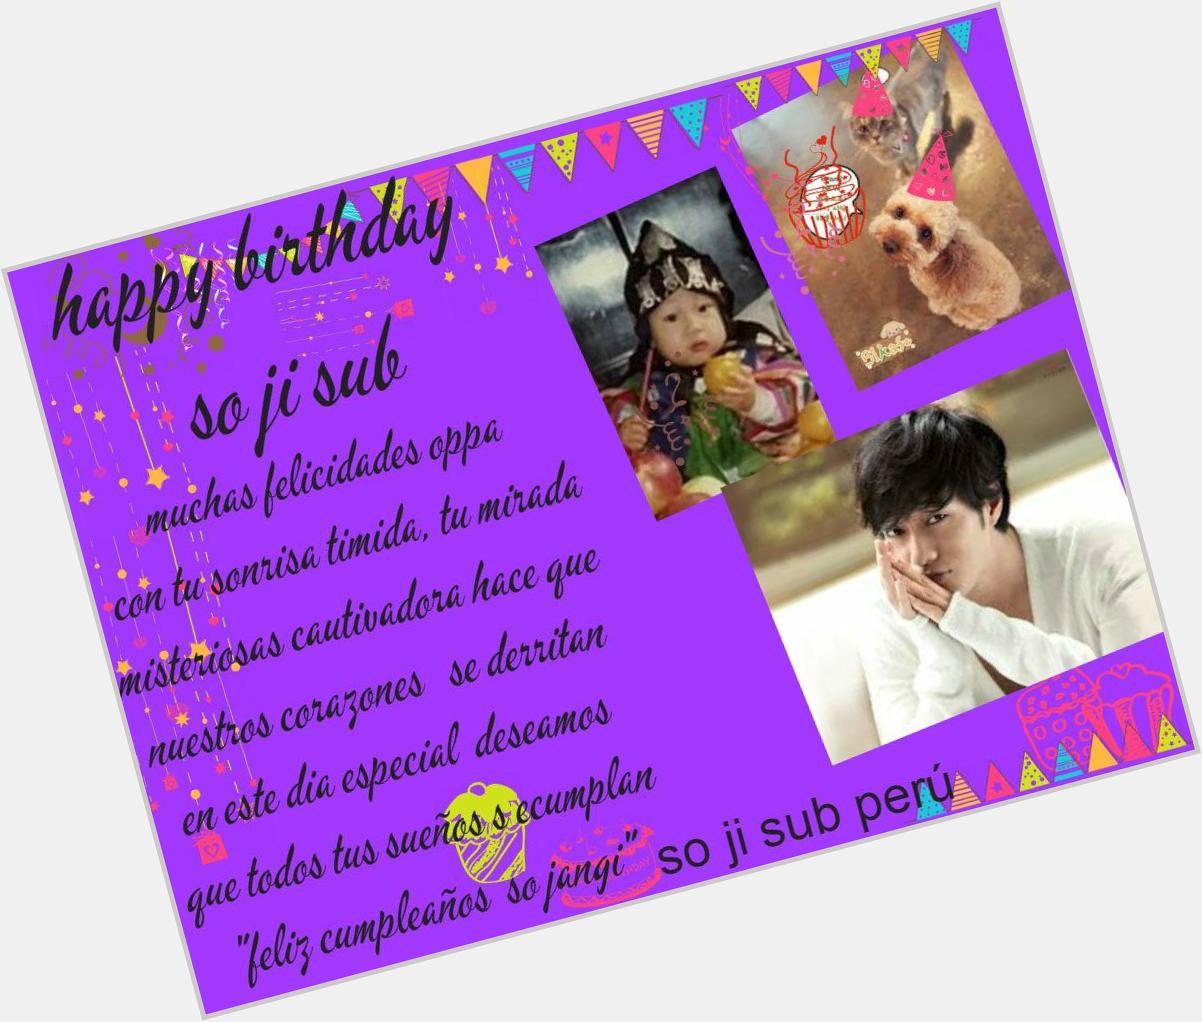 Hoy aquí en sudamericana es 04 de noviembre.cumpleaños de nuestro amado
 so ji sub "happy birthday  so ji sub oppa" 